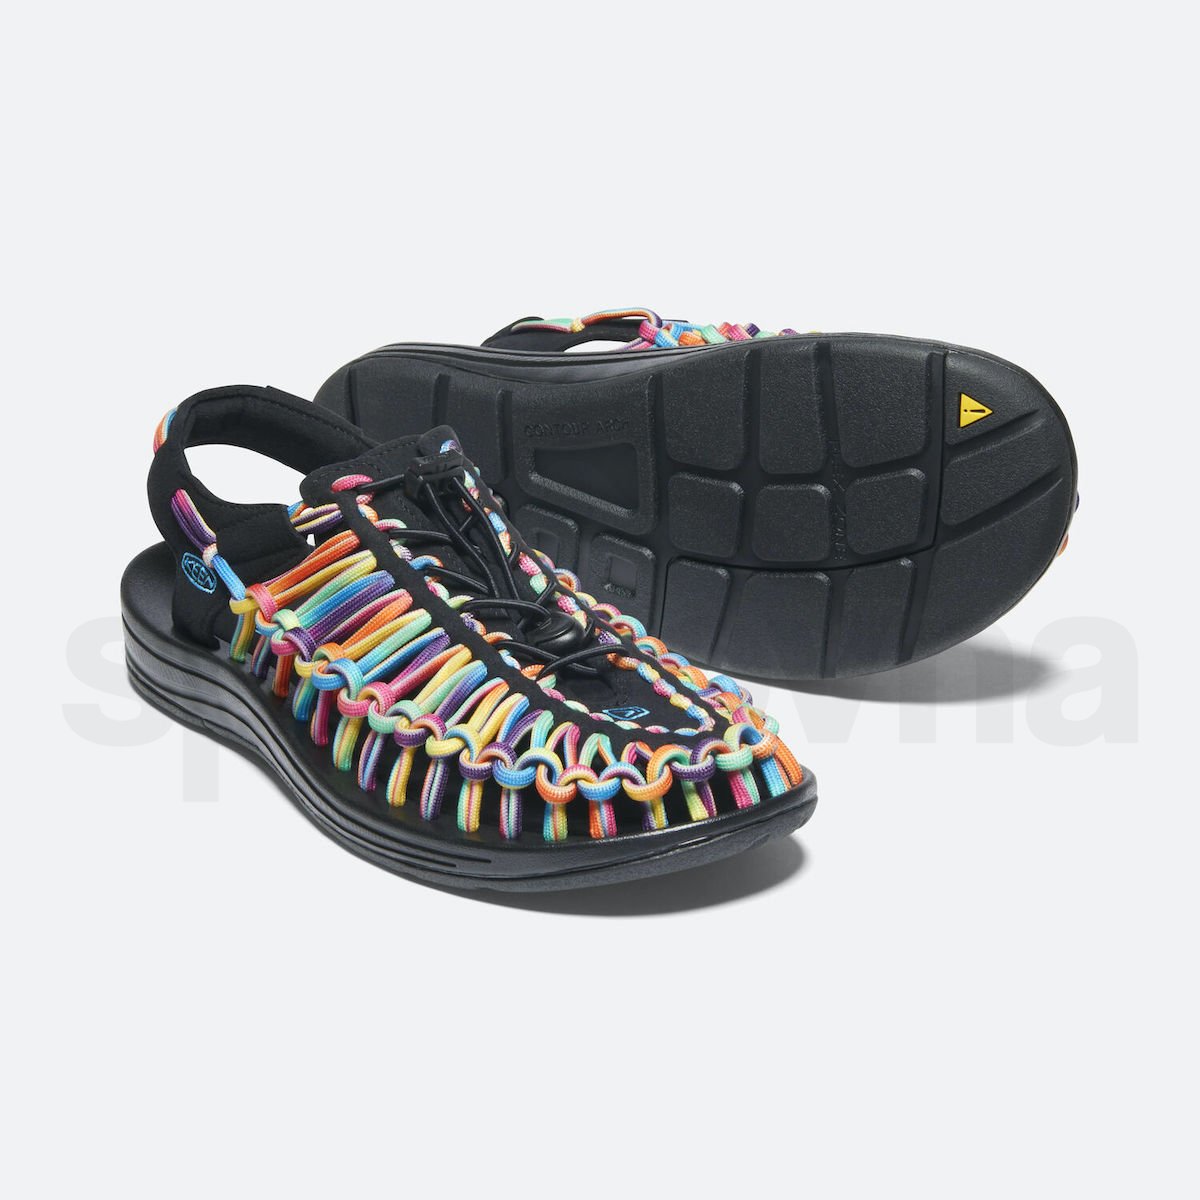 Obuv - sandály Keen Uneek M - černá/barevná